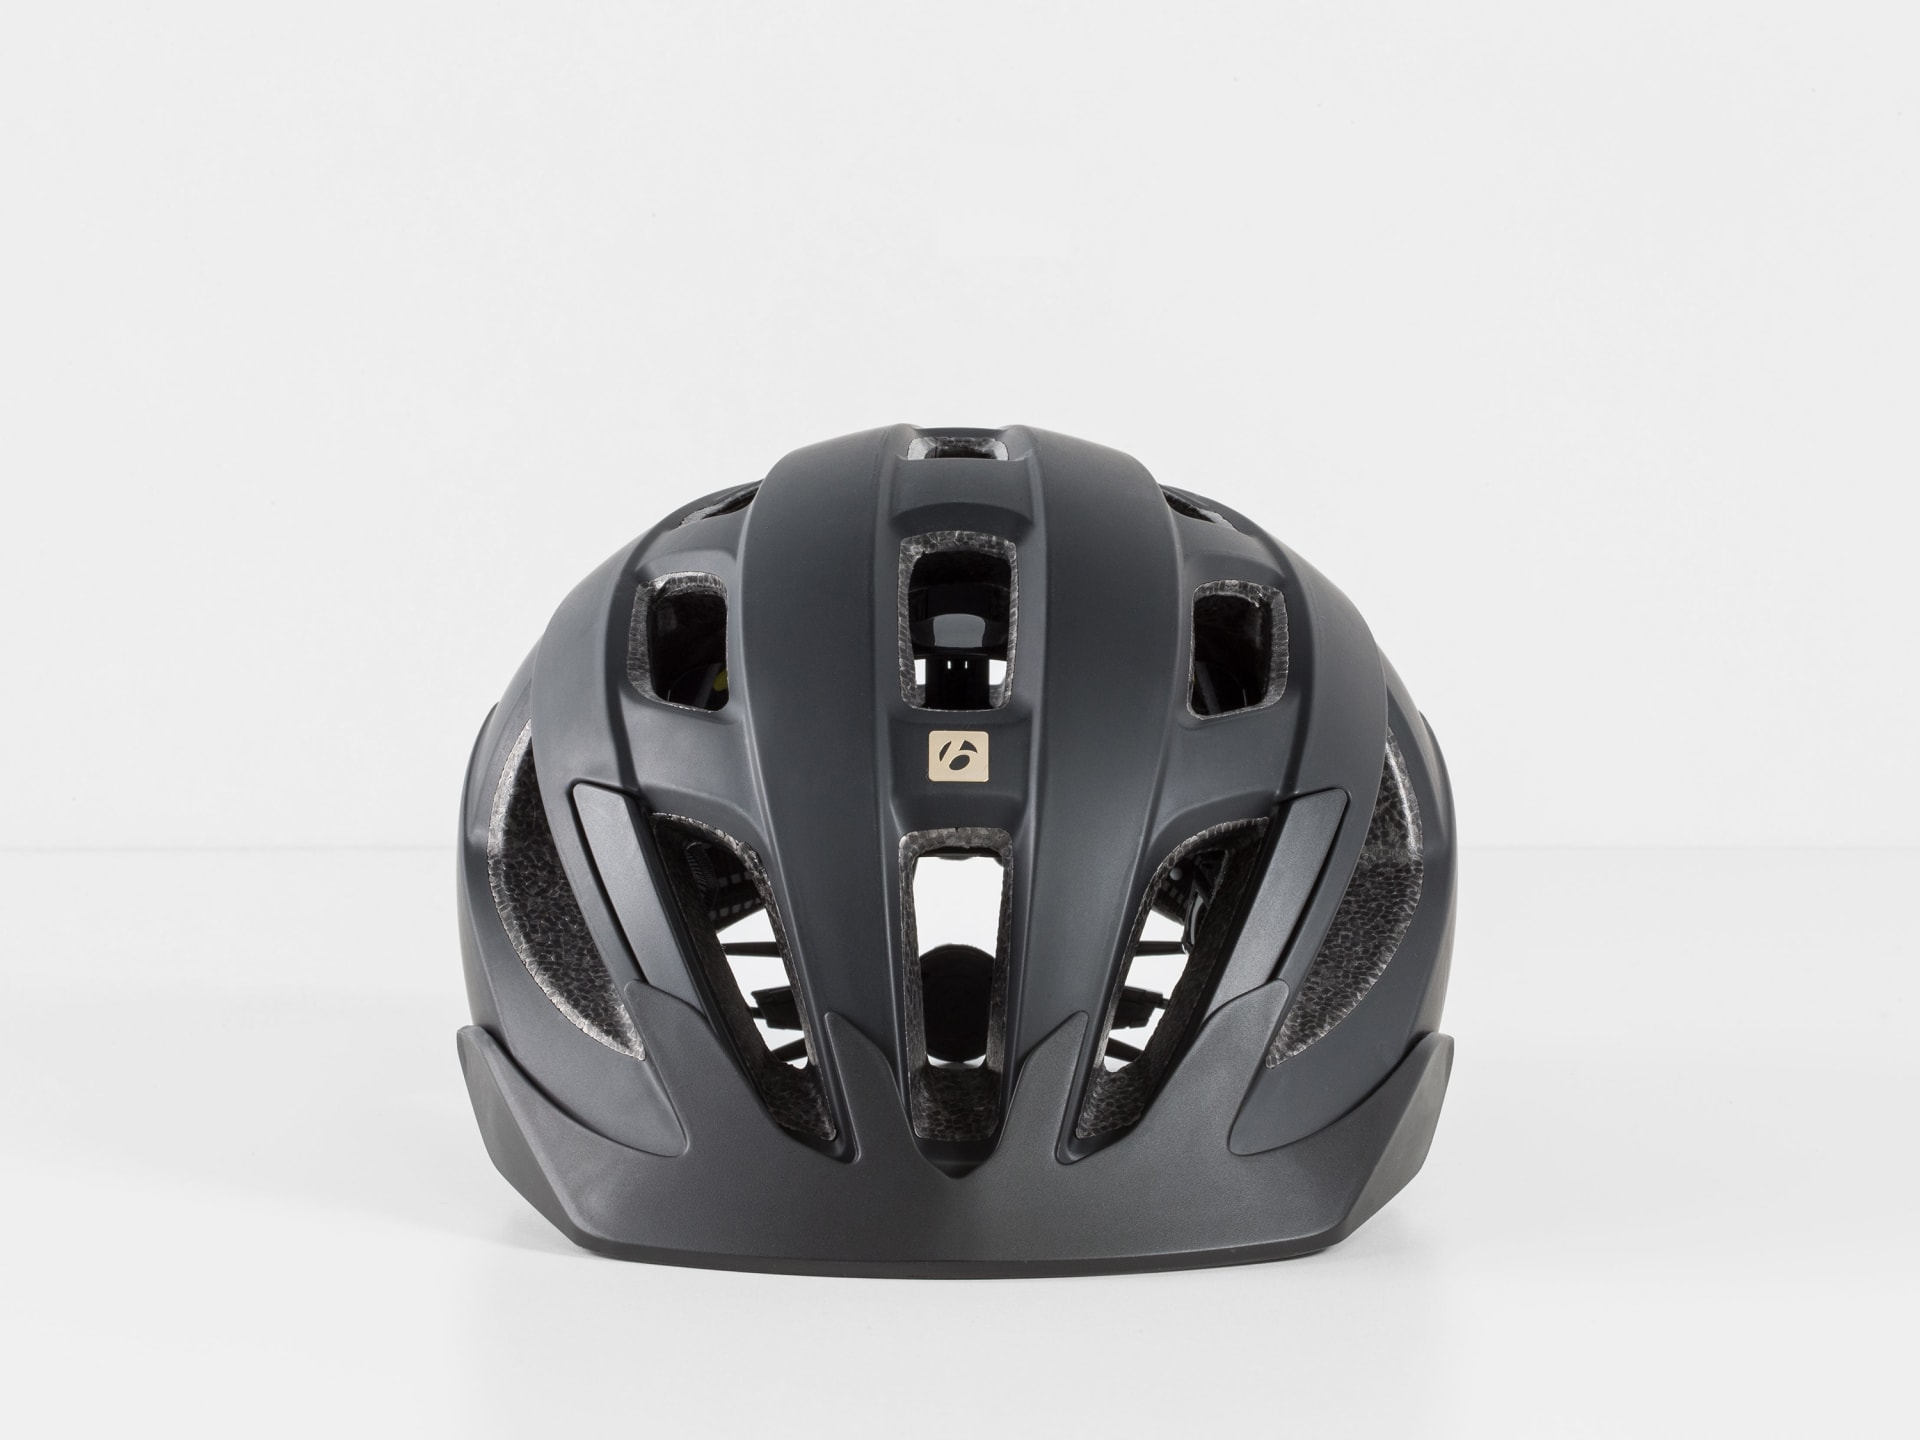 Bontrager Solstice Mips Bike Helmet